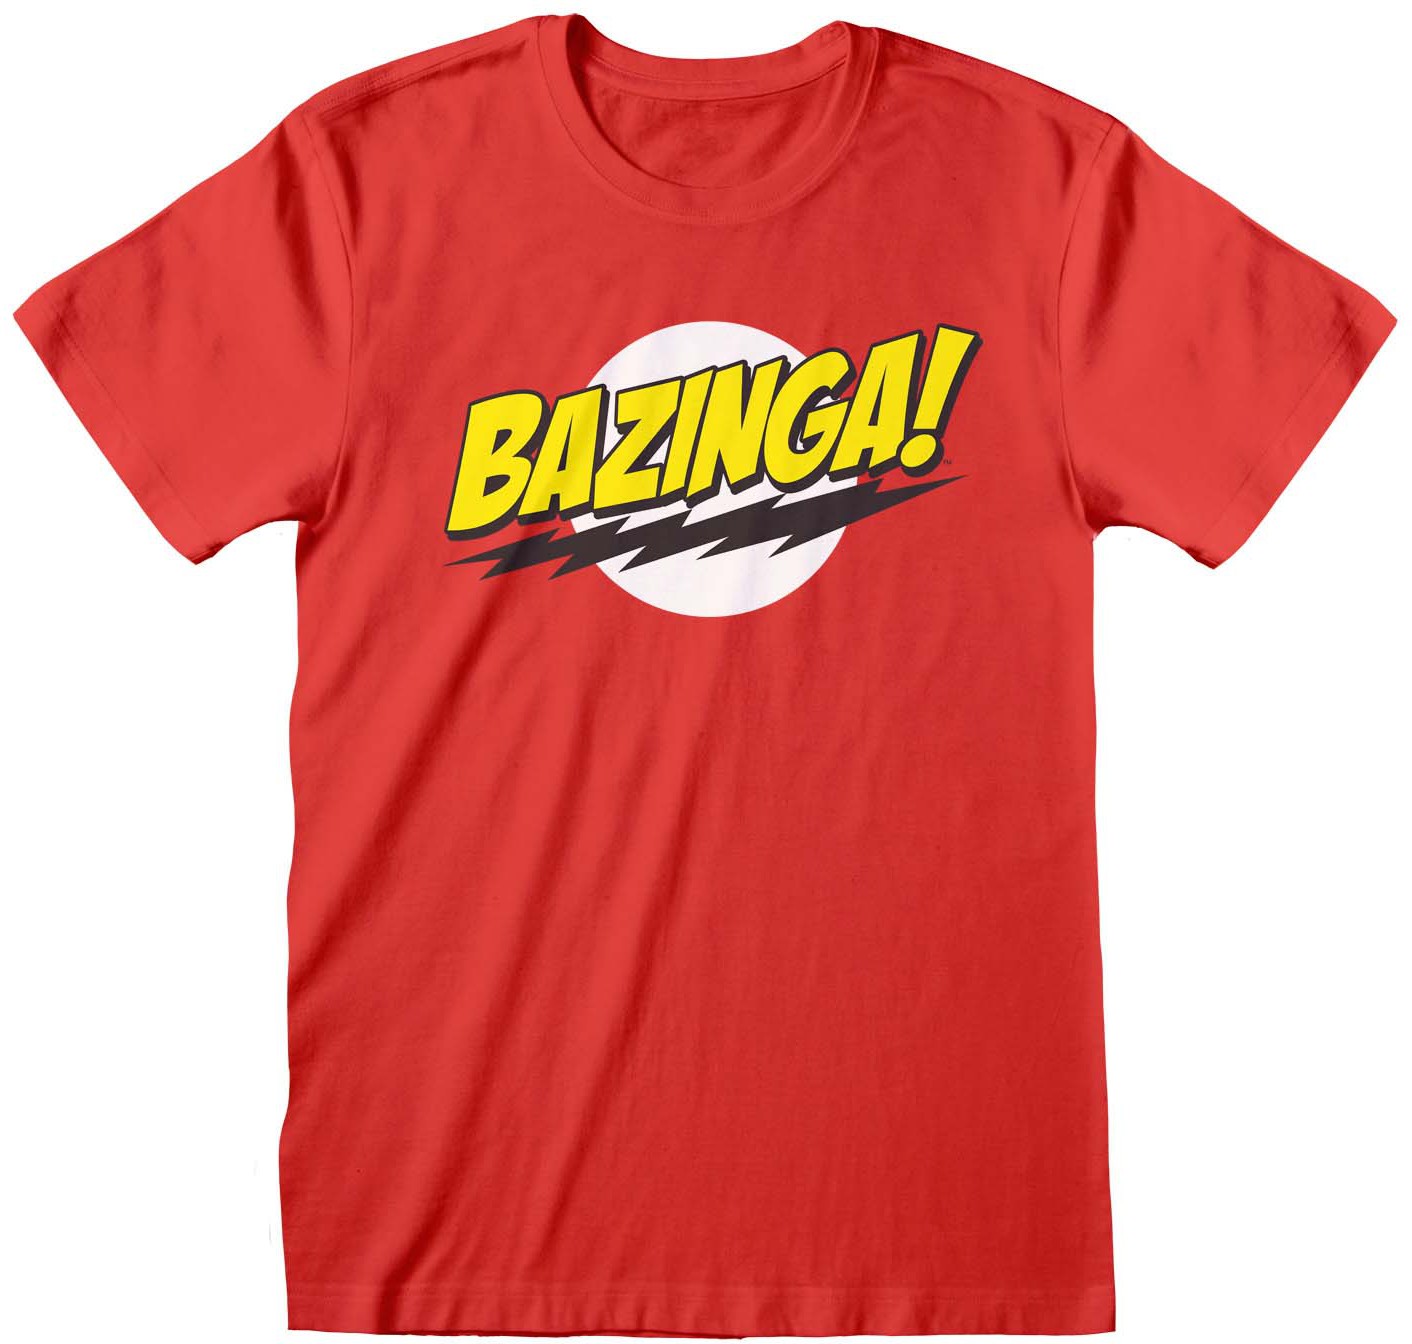 The Big Bang Theory - Bazinga! T-Shirt